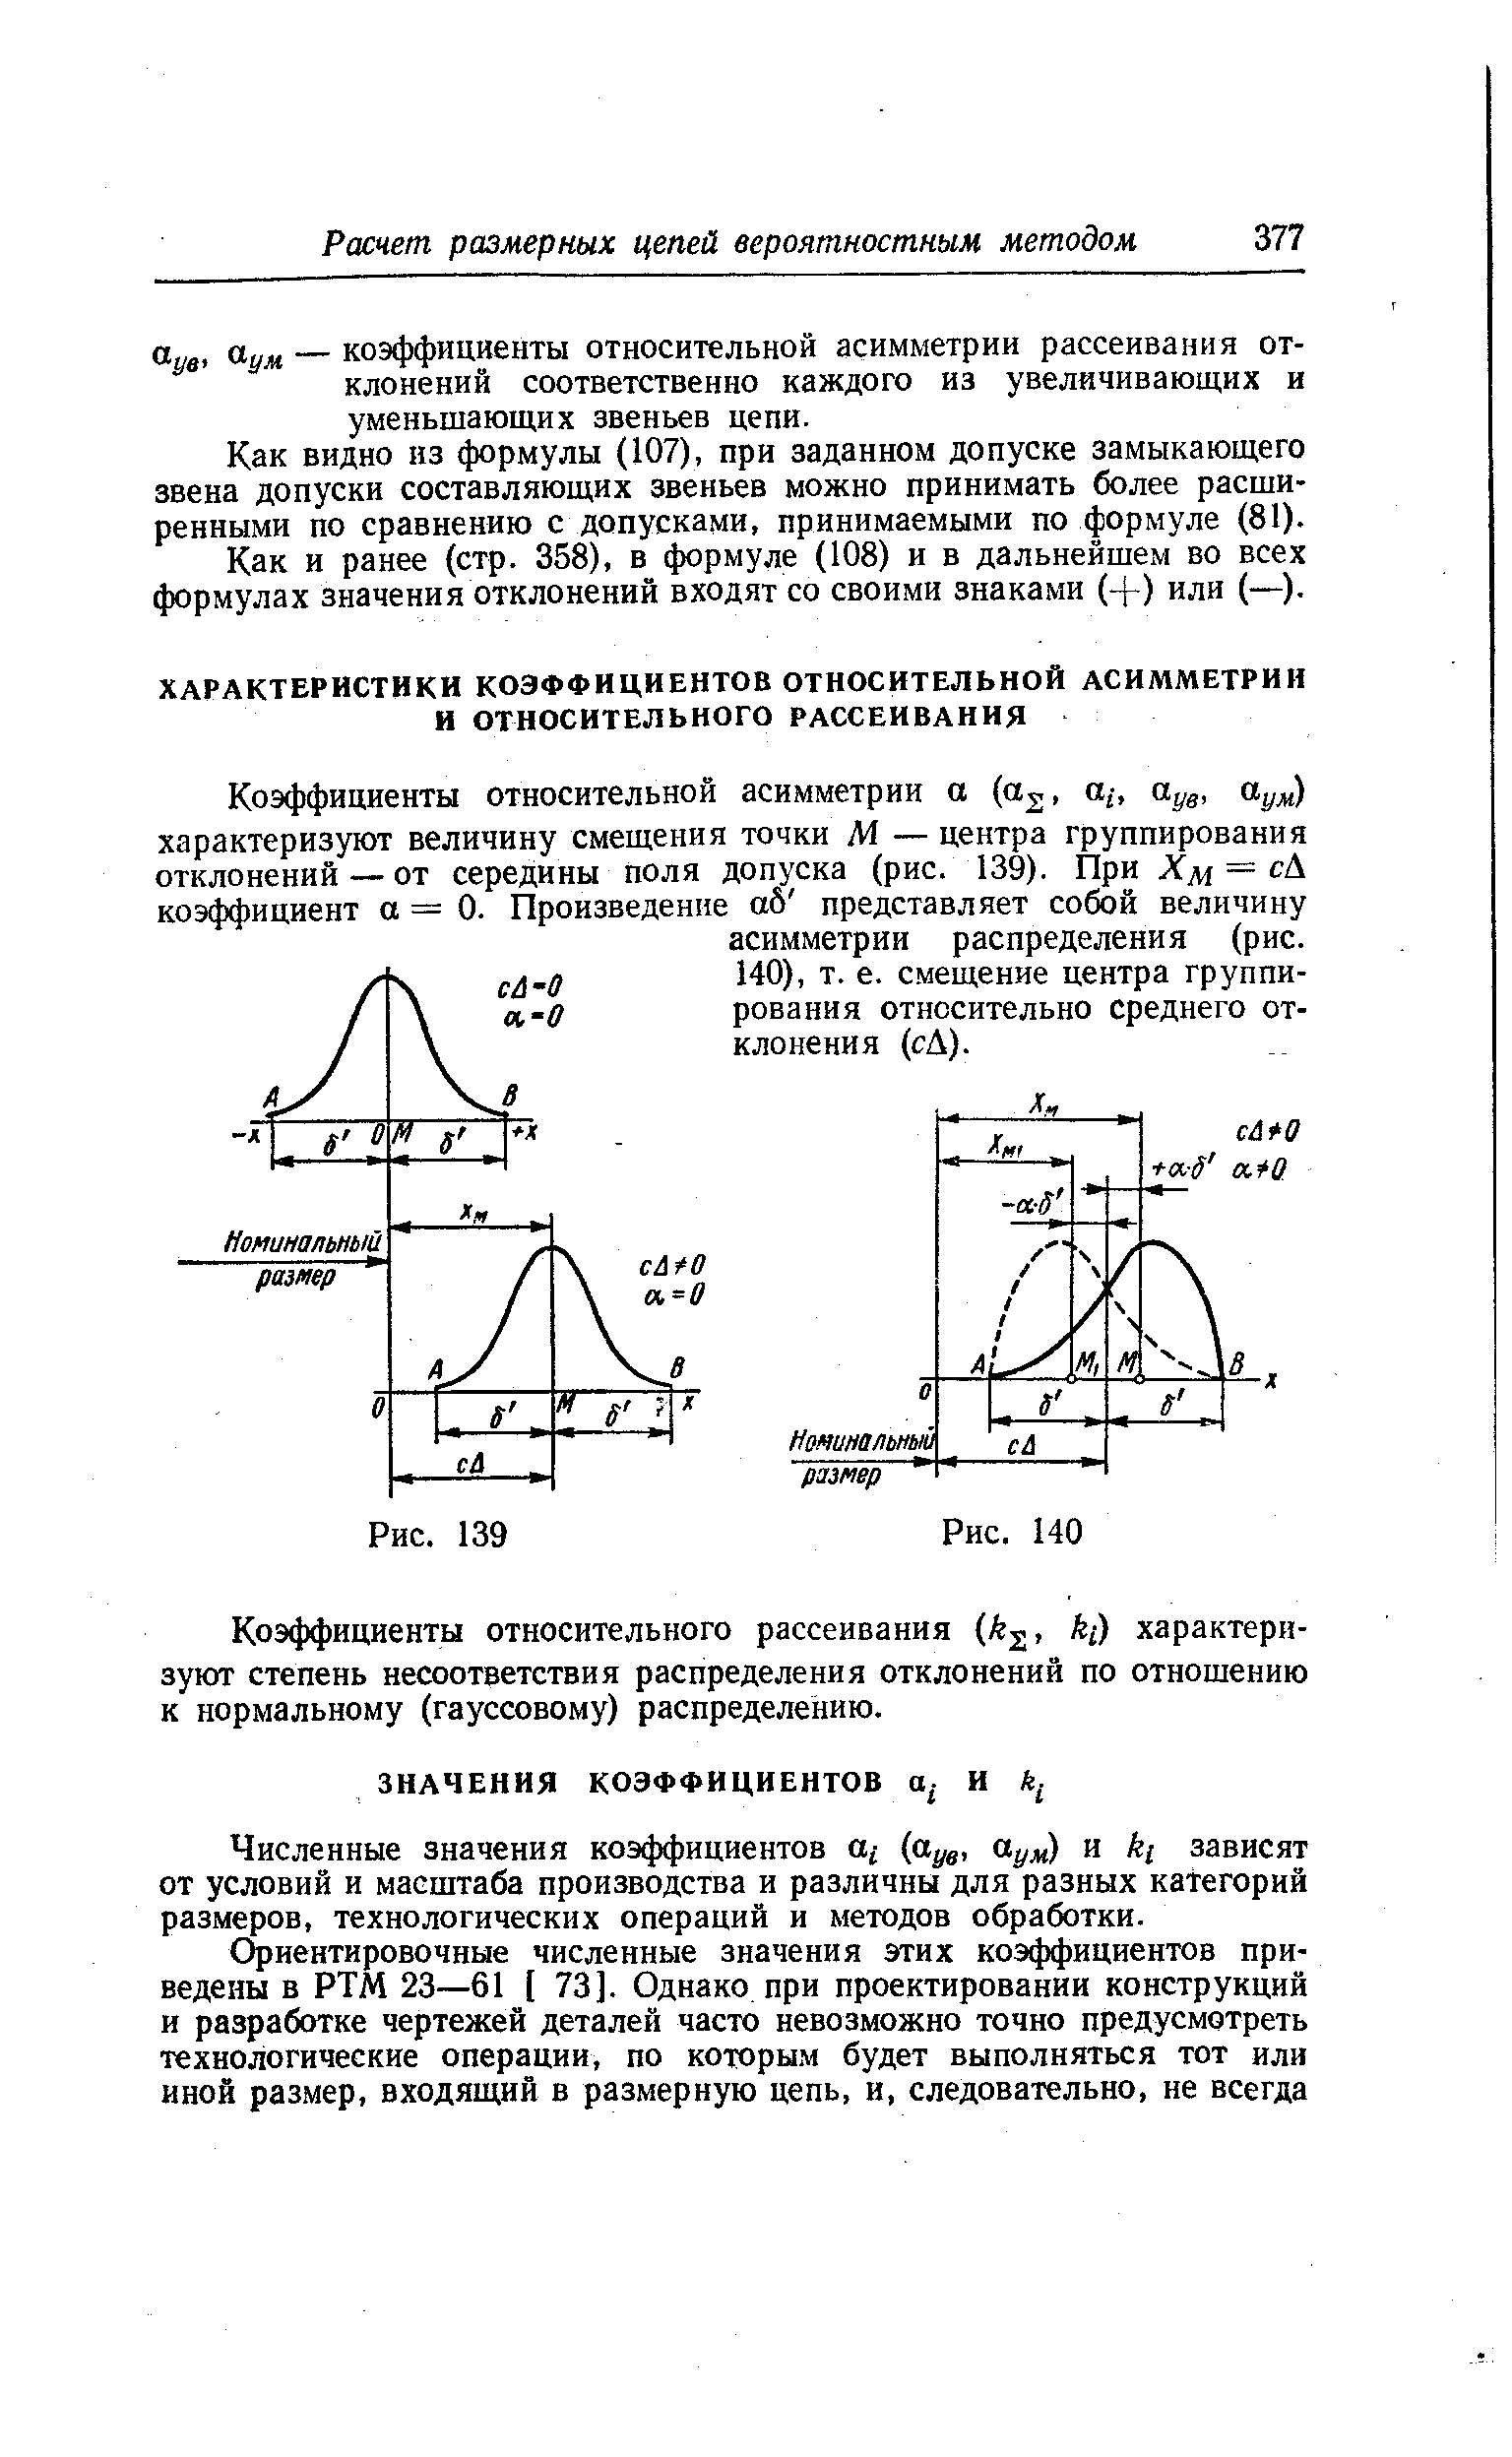 Коэффициенты относительного рассеивания k , kj) характеризуют степень несоответствия распределения отклонений по отношению к нормальному (гауссовому) распределению.
